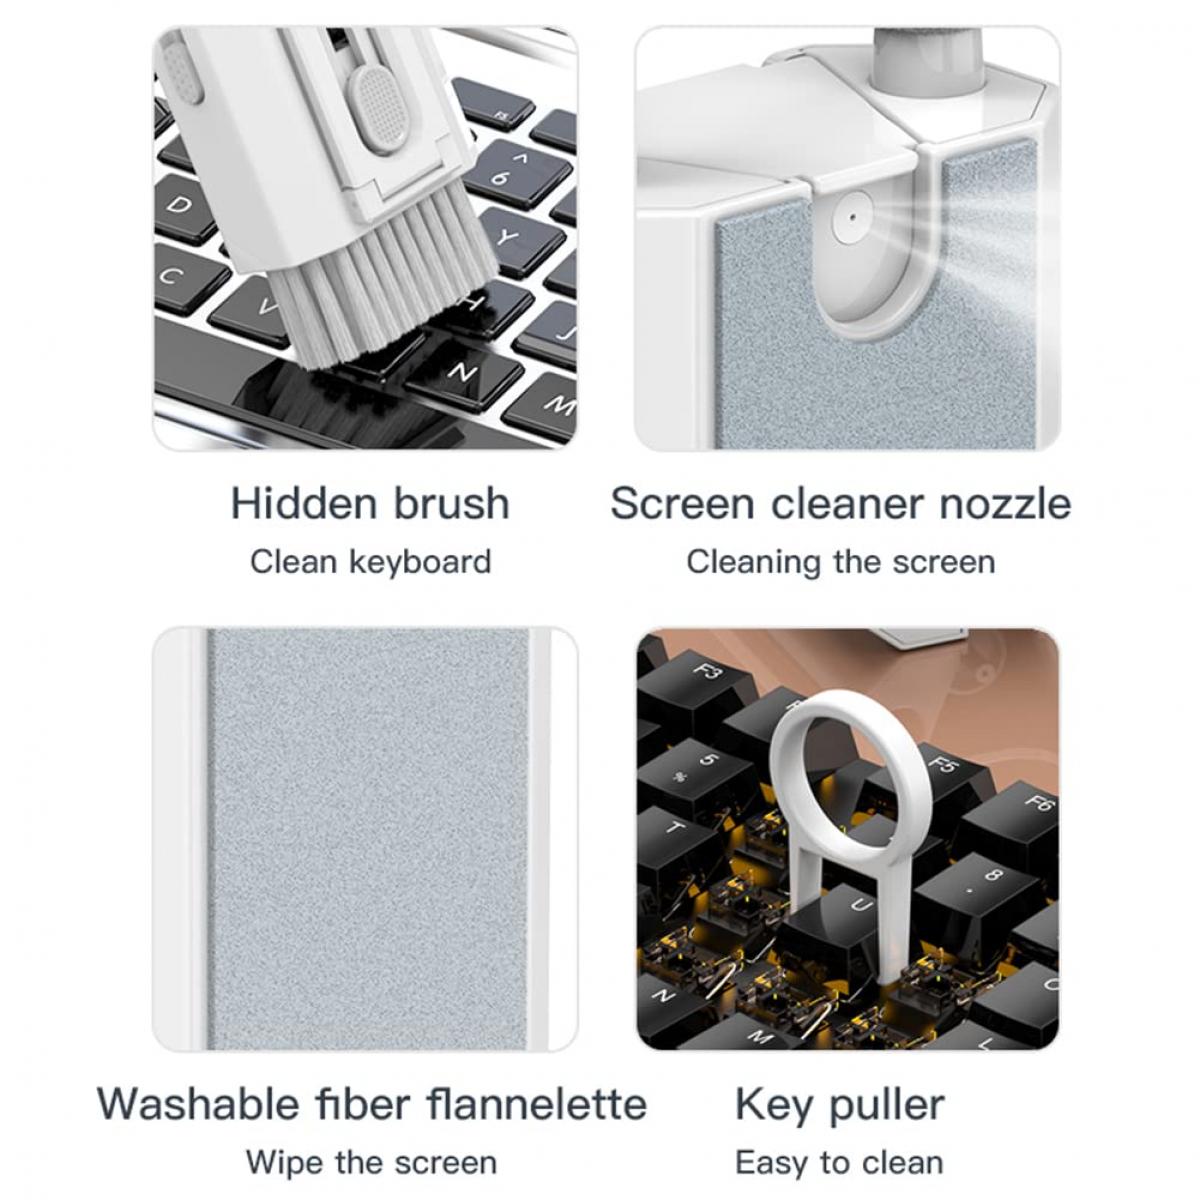 Kit de nettoyage complet 3-en-1 pour écrans iPhone Ipad Mac et lentilles